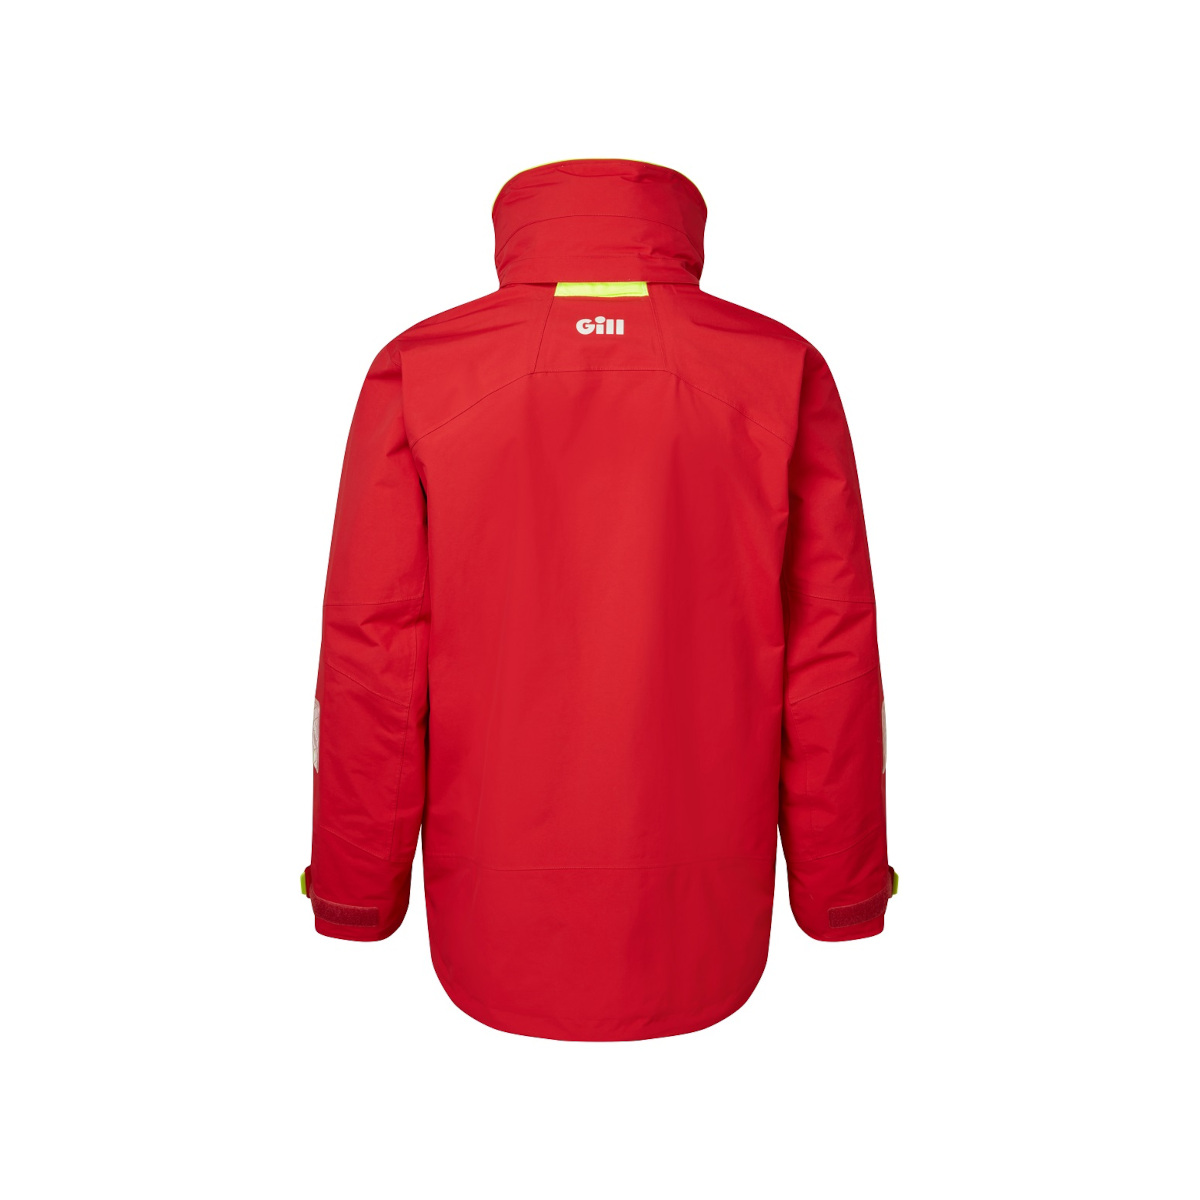 Gill OS32 veste de voile Coastal hommes rouge, taille L